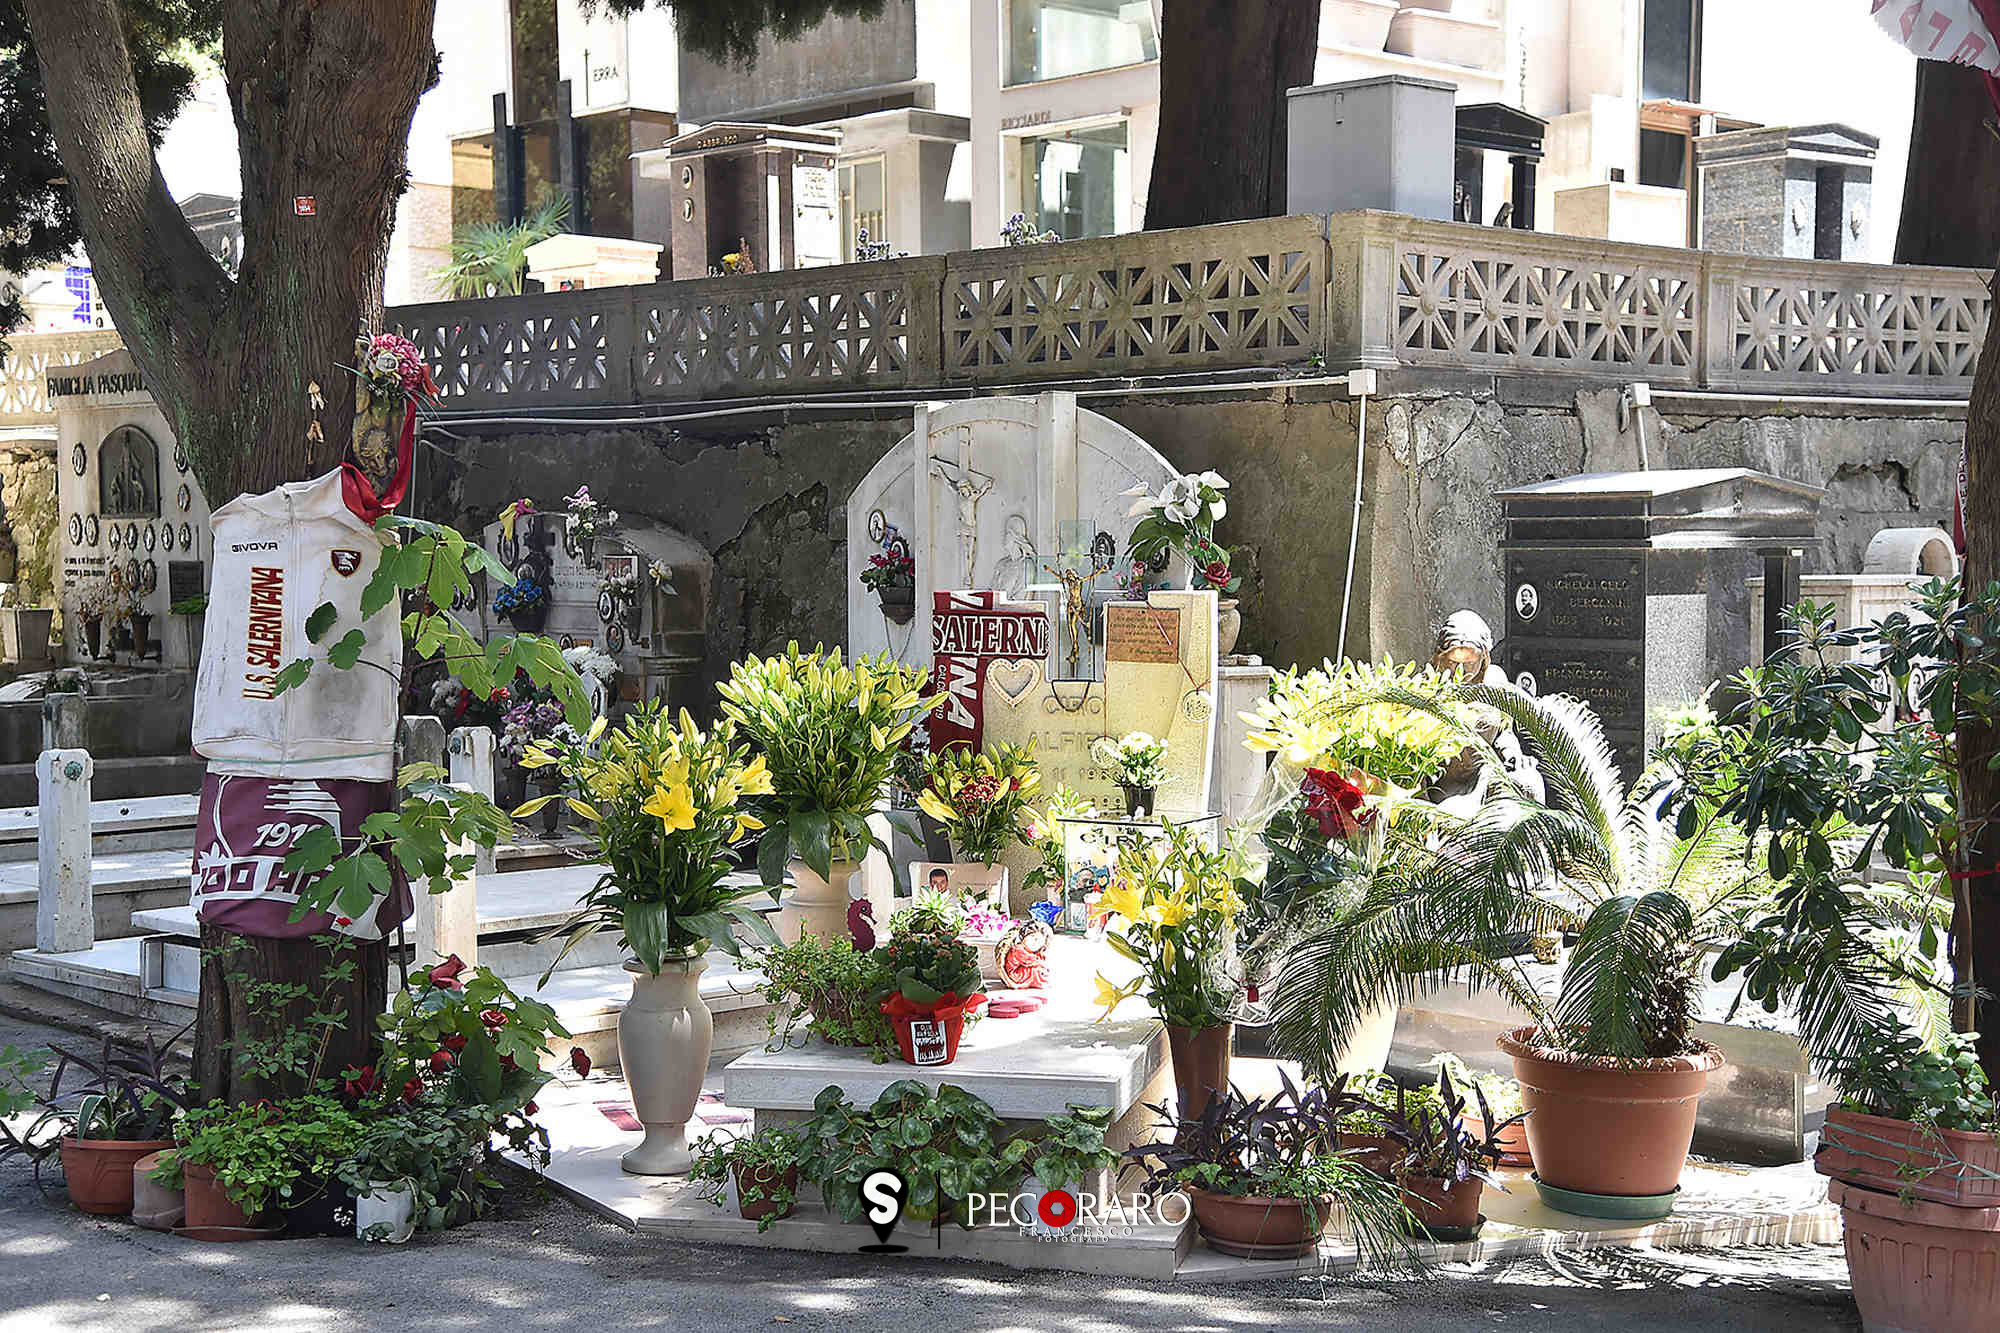 SAL -24 05 2022 Salerno Cimitero. Commemorazione 24 maggio. Foto Tanopress